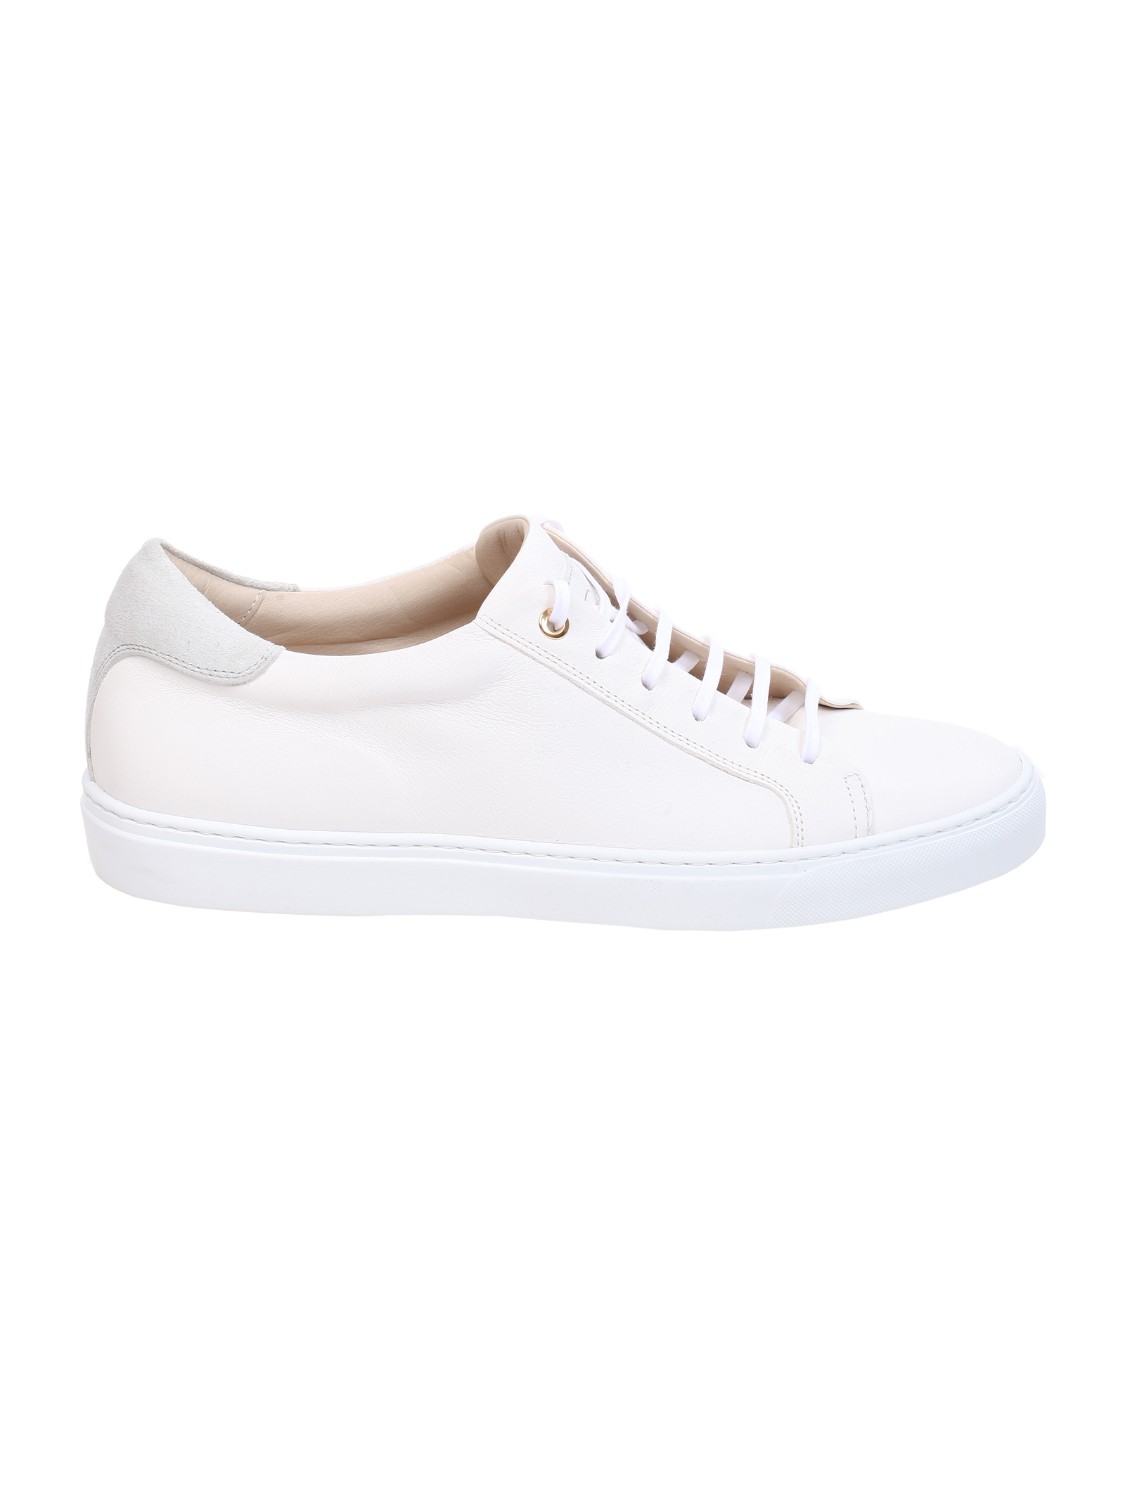 shop CORVARI Saldi Scarpe: Corvari sneakers in pelle bianca.
Chiusura con lacci.
Dettagli in camoscio.
Made in Italy.
Composizione: 100% pelle.. 9650 TODI-HONEY number 4379349